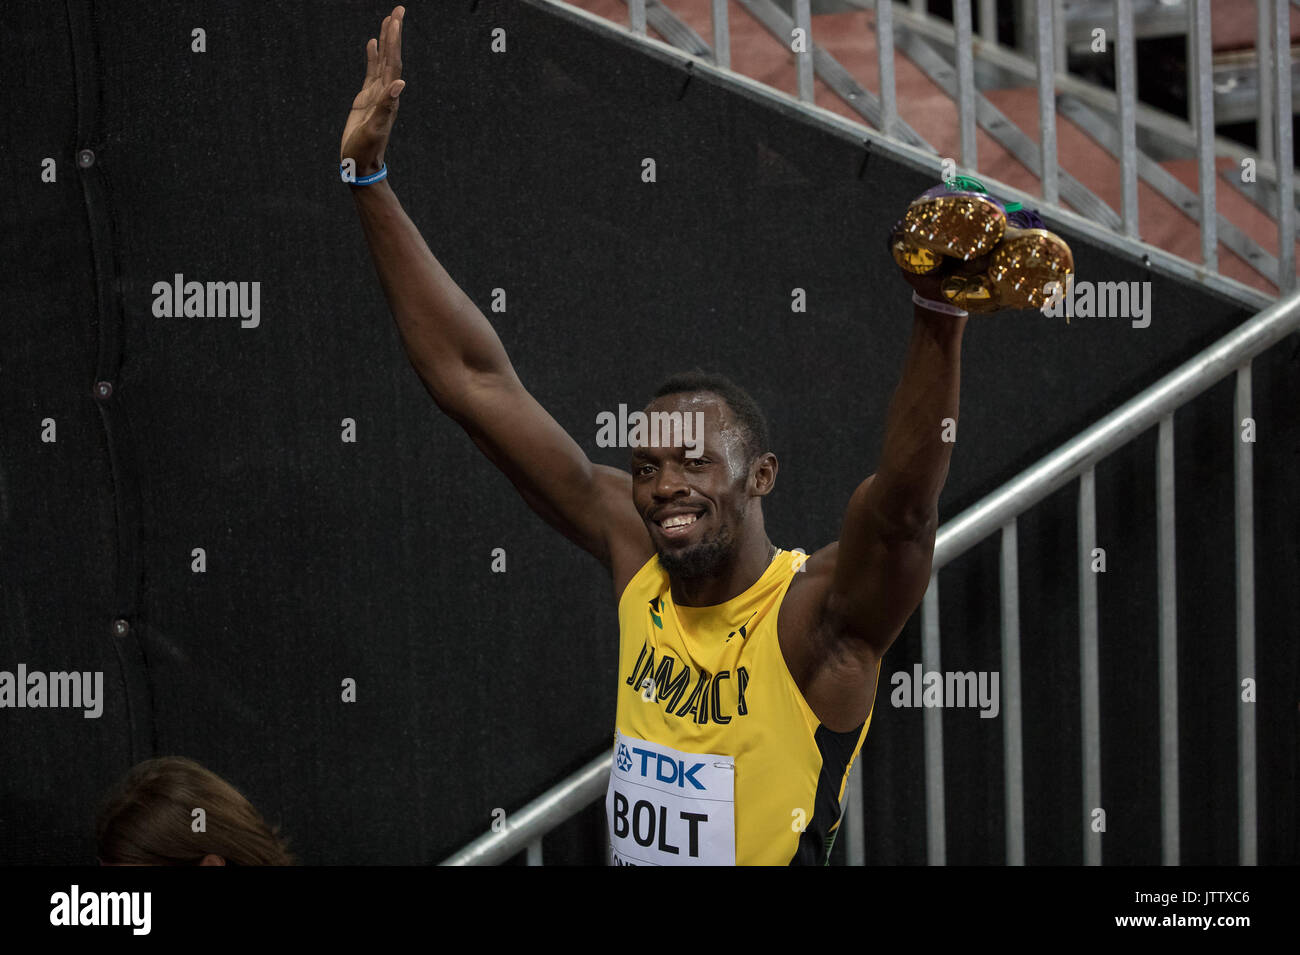 Usain Bolt nach seiner Runde 1 Wärme der 100 m Während der Leichtathletik-WM TAG 1 an der Olympic Park, London, England am 4. August 2017. Foto von Andy Rowland. Stockfoto